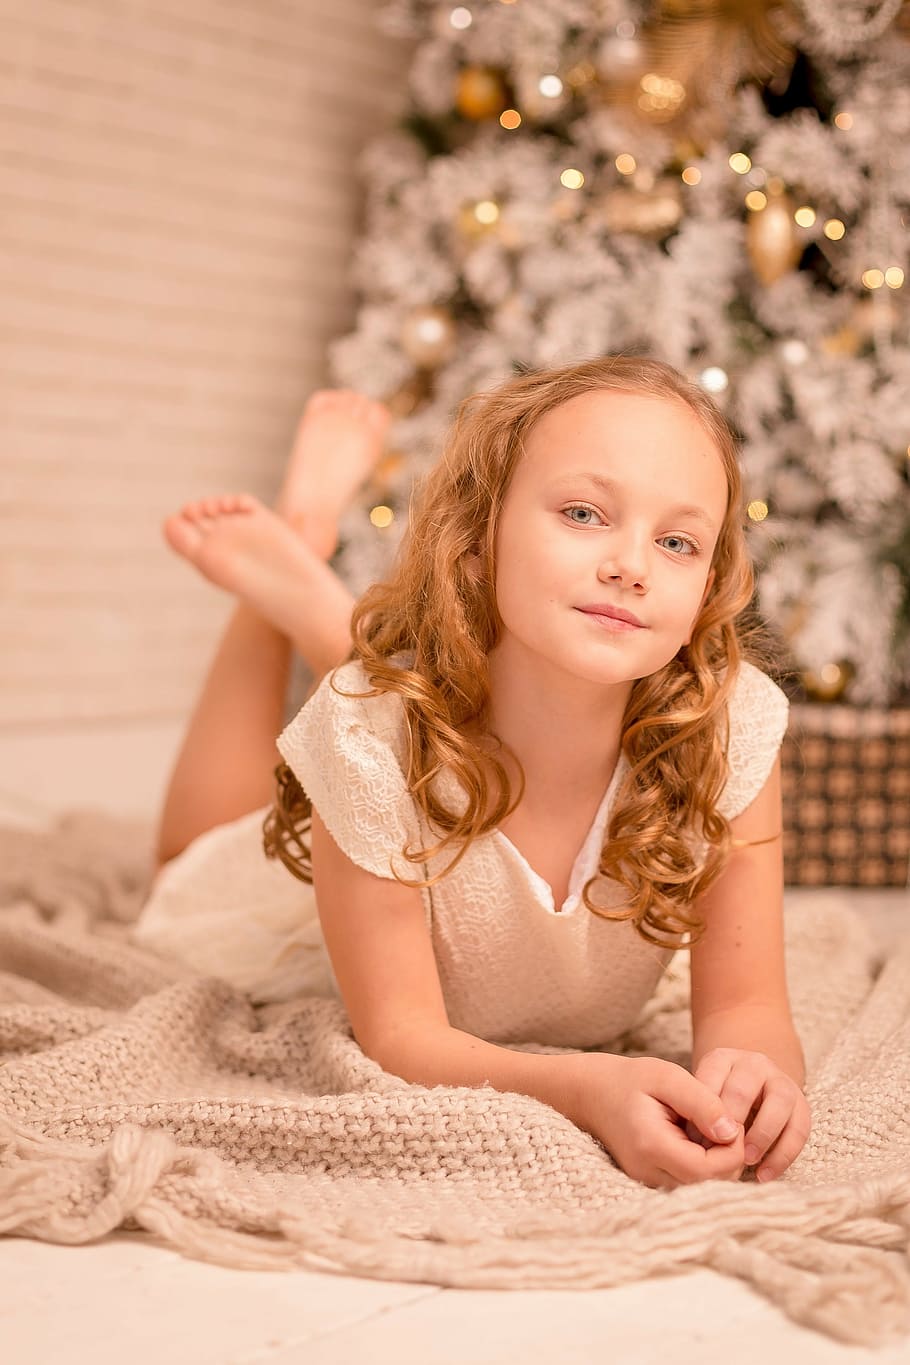 HD wallpaper: girl in white dress lying on floor near Christmas tree ...